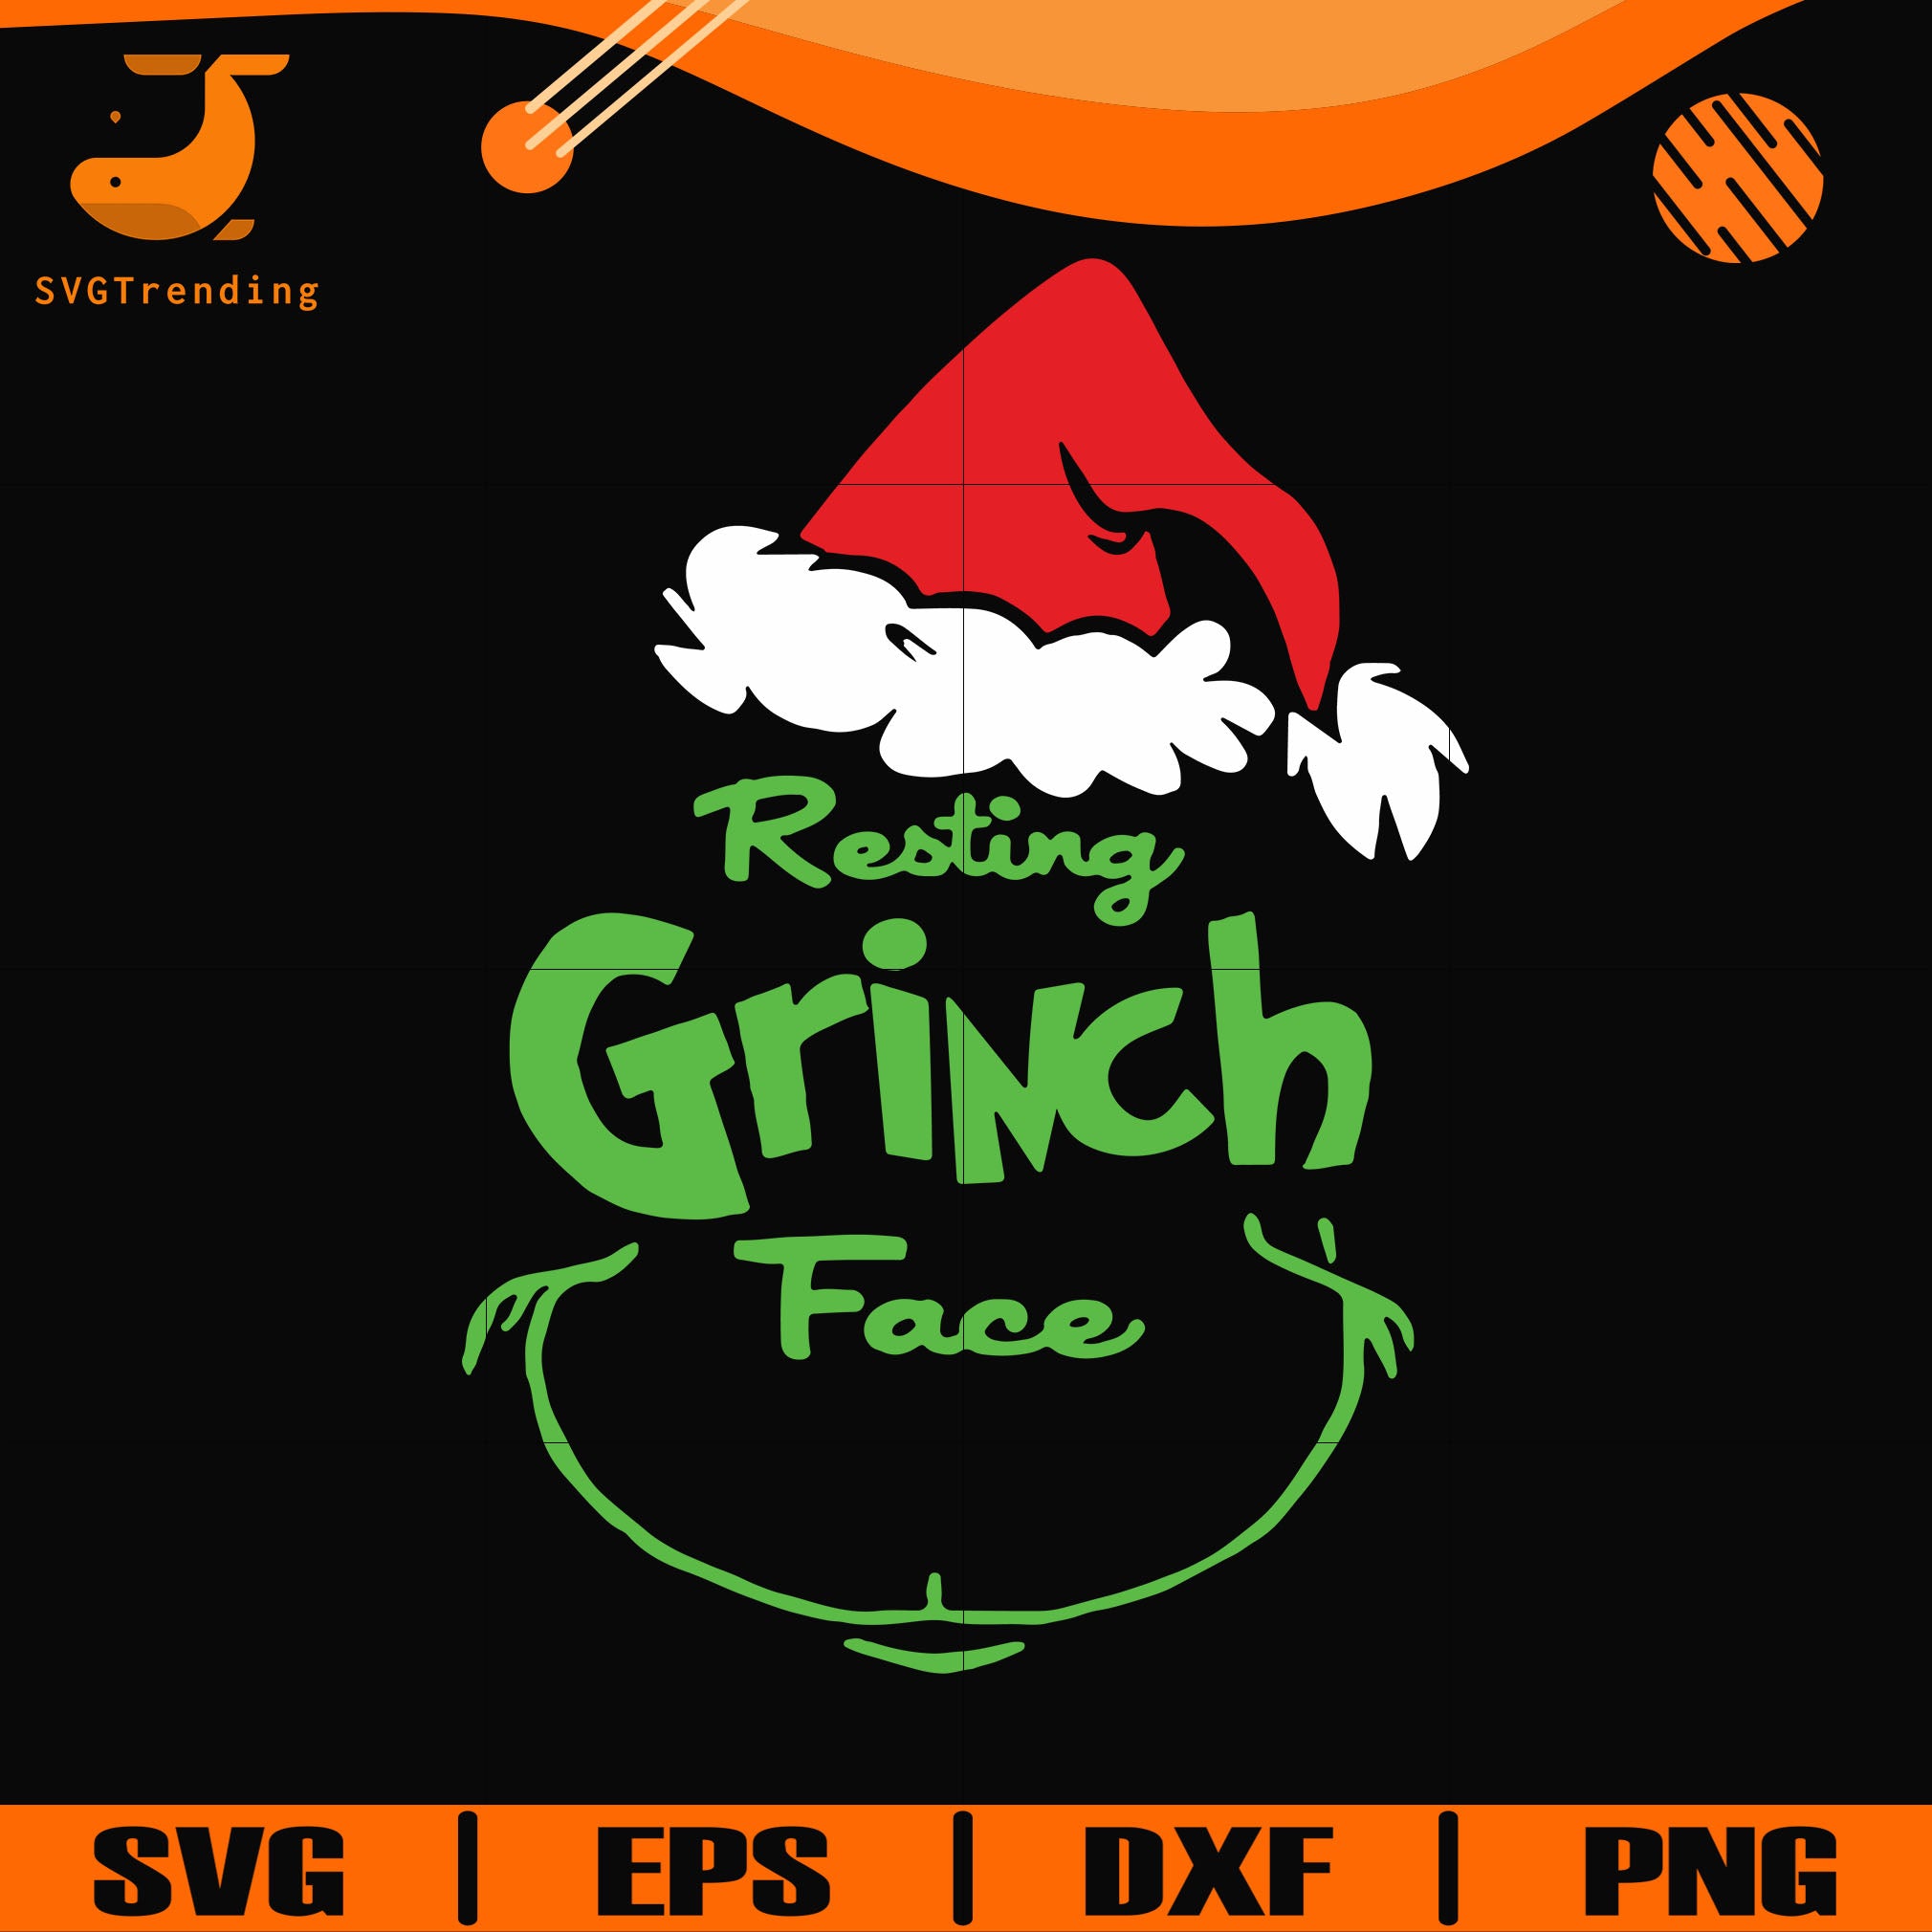 Download Resting Grinch Face Svg Png Dxf Eps Digital File Ncrm13072026 Svgtrending